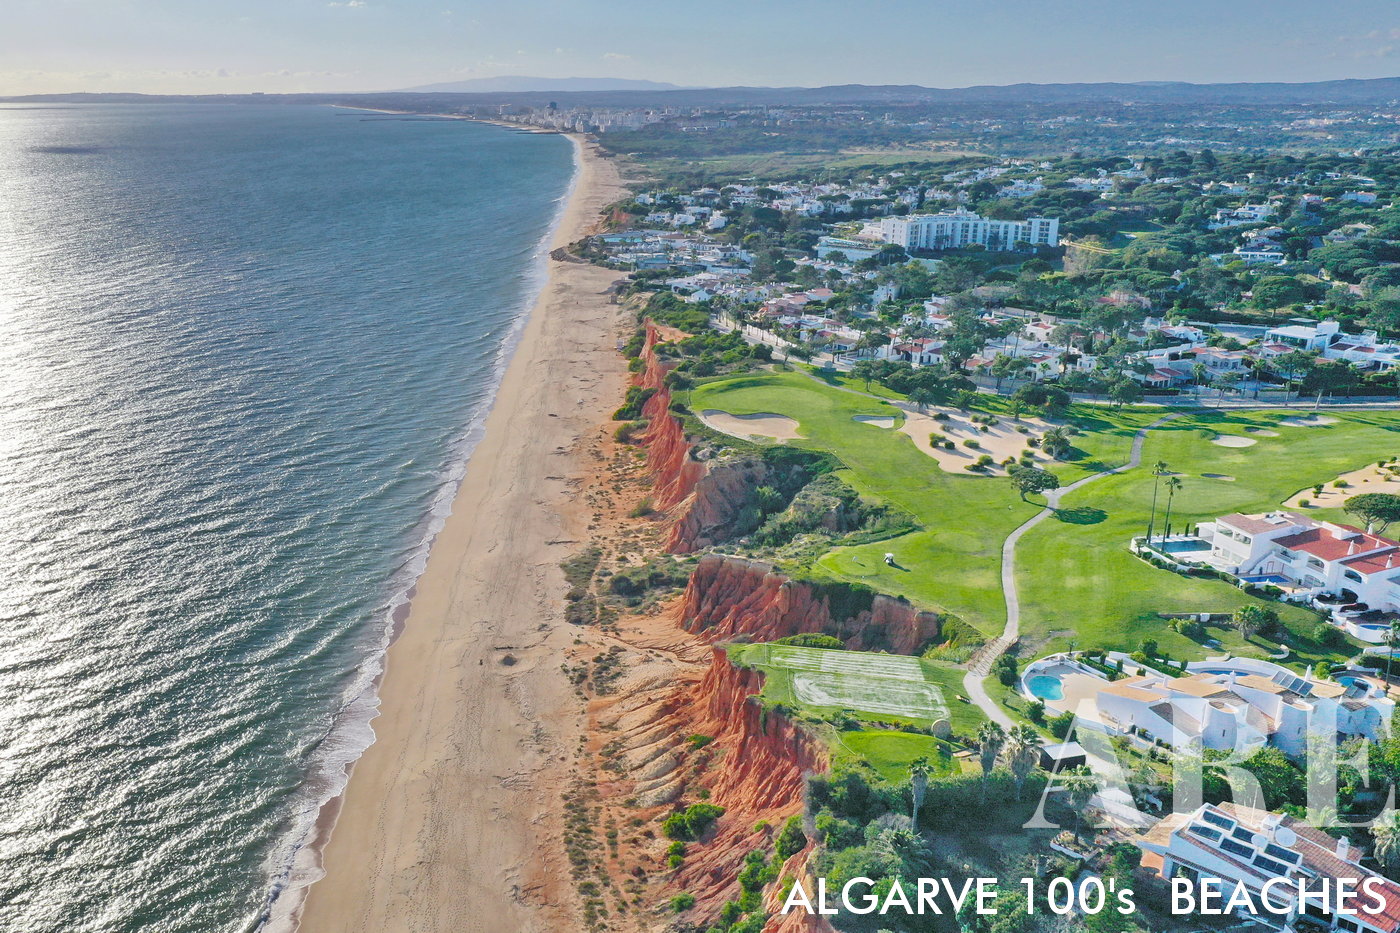 La vista desde la playa de Vale do Lobo hacia el oeste abarca el pintoresco tramo de costa que conduce a la ciudad de Quarteira y al Océano Atlántico.